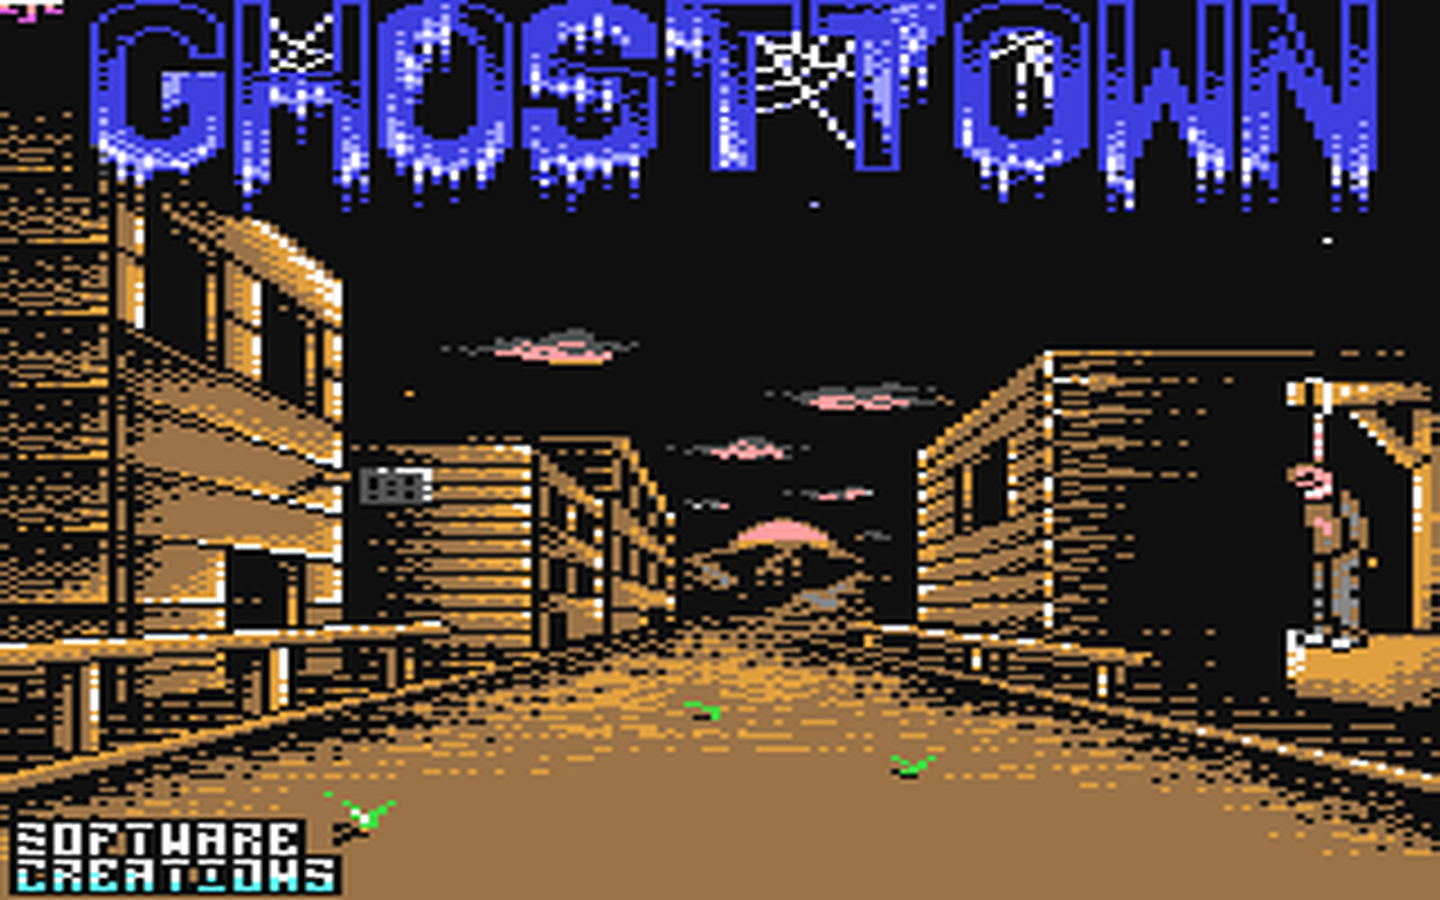 C64 GameBase Ghosttown Virgin_Mastertronic 1990